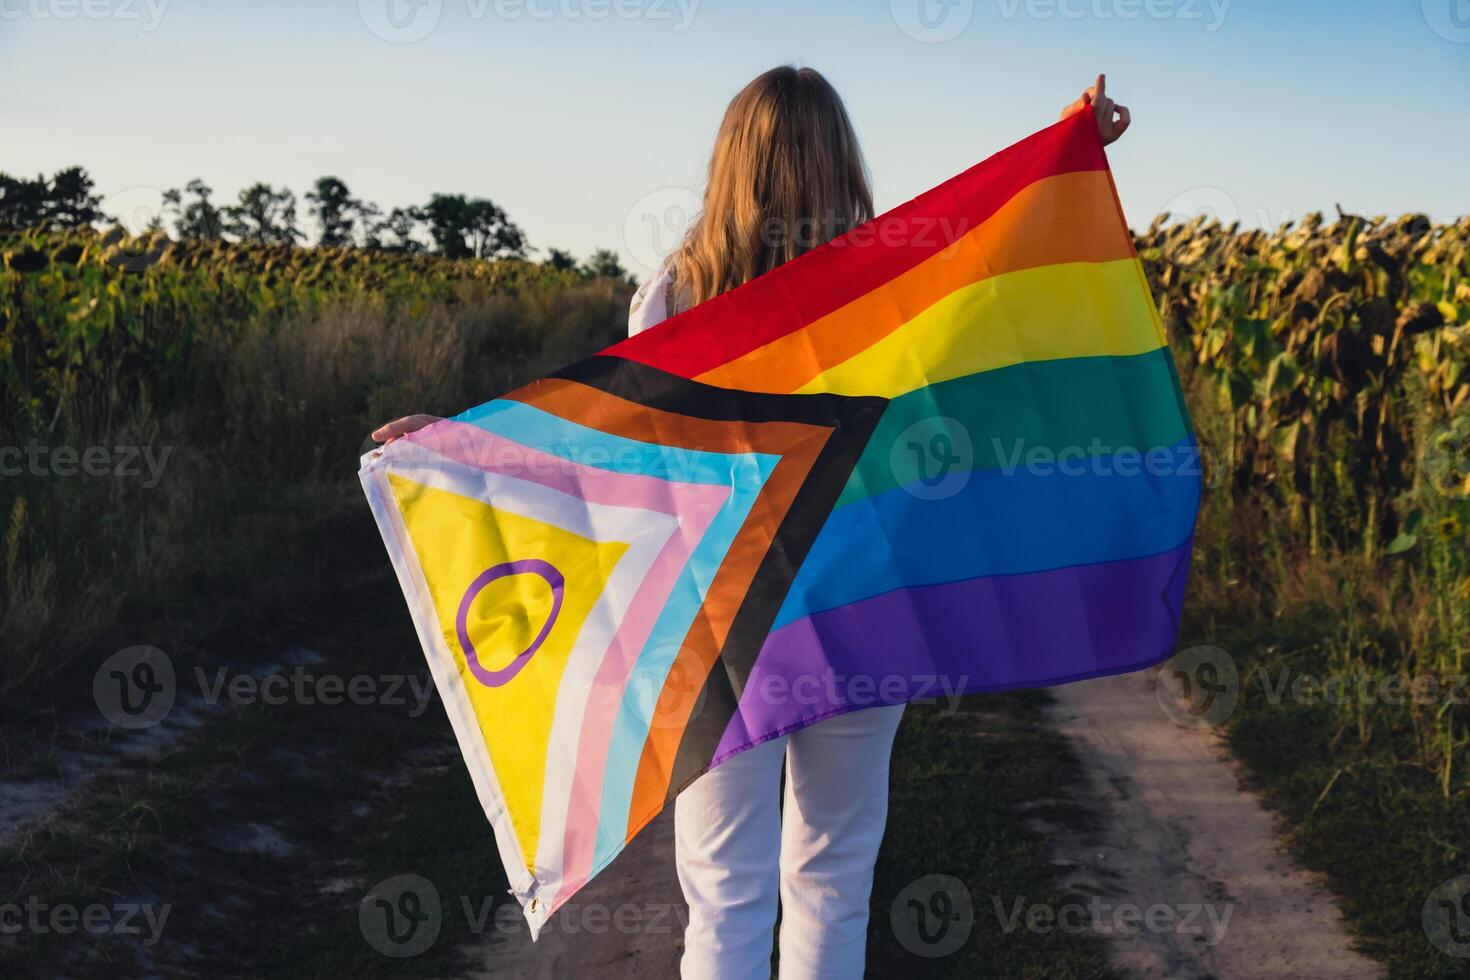 symbole de lgbtq fierté mois. Jeune femme montrant arc en ciel lgbtqia drapeau agitant dans vent fabriqué de soie Matériel sur champ Contexte. égal droits. paix et liberté concept photo